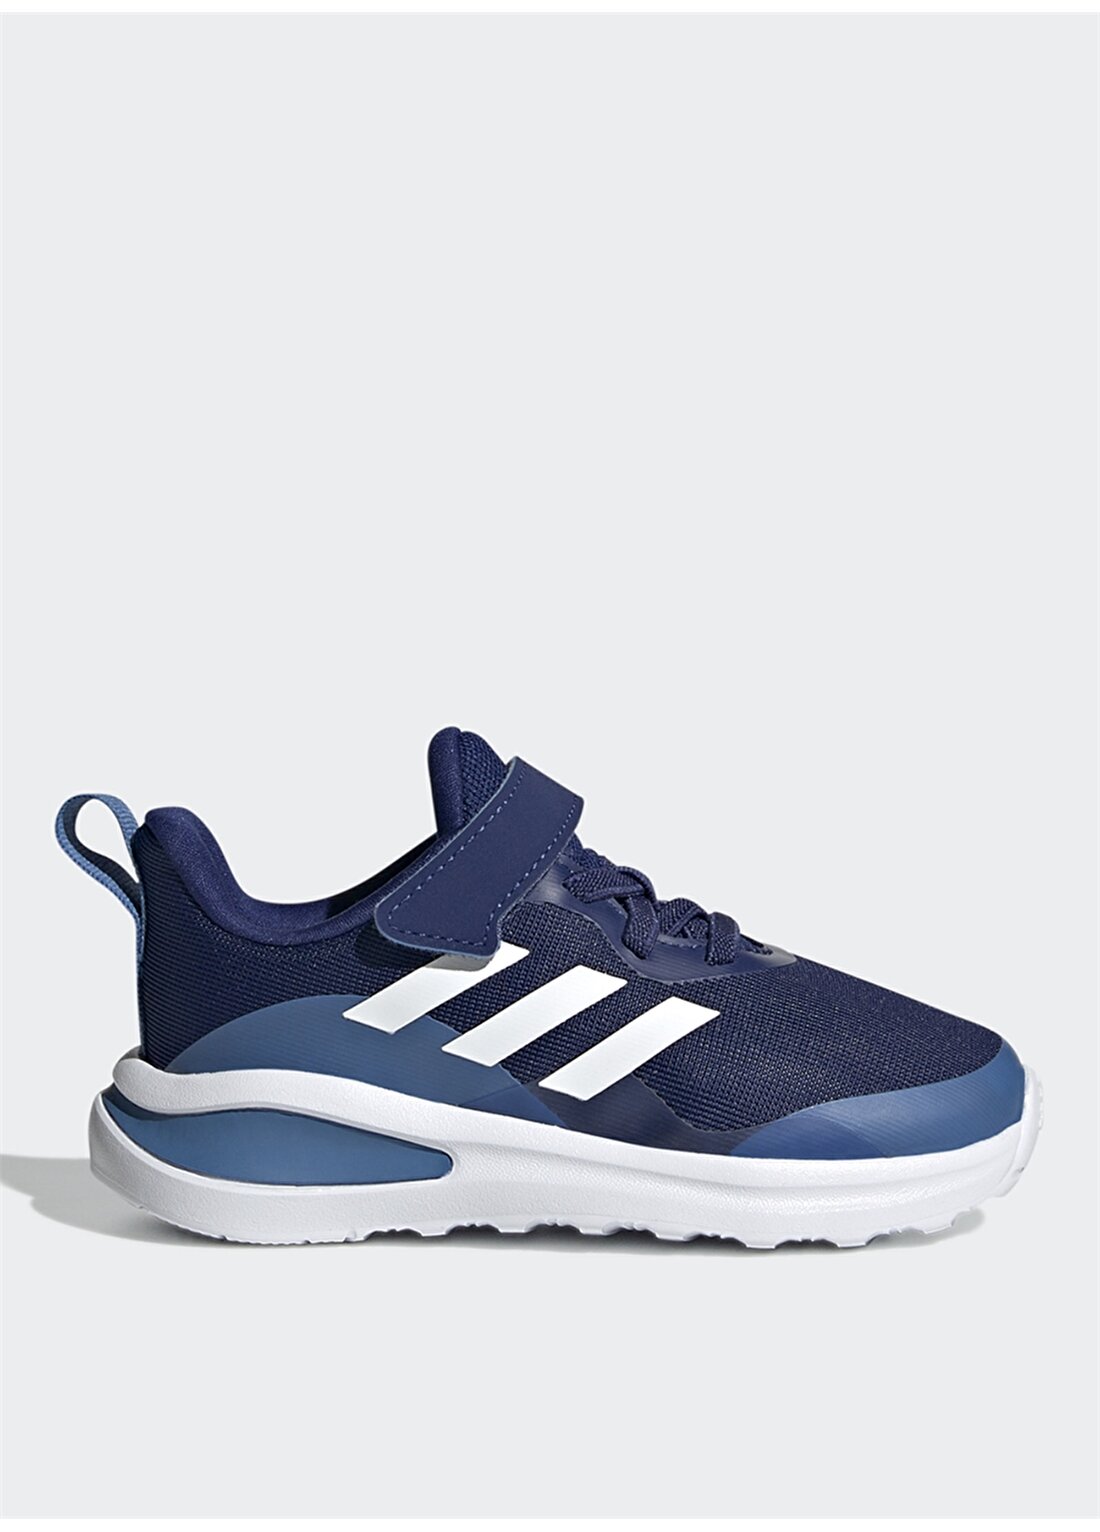 Adidas Fortarun El I Mavi - Beyaz Erkek Çocuk Yürüyüş Ayakkabısı